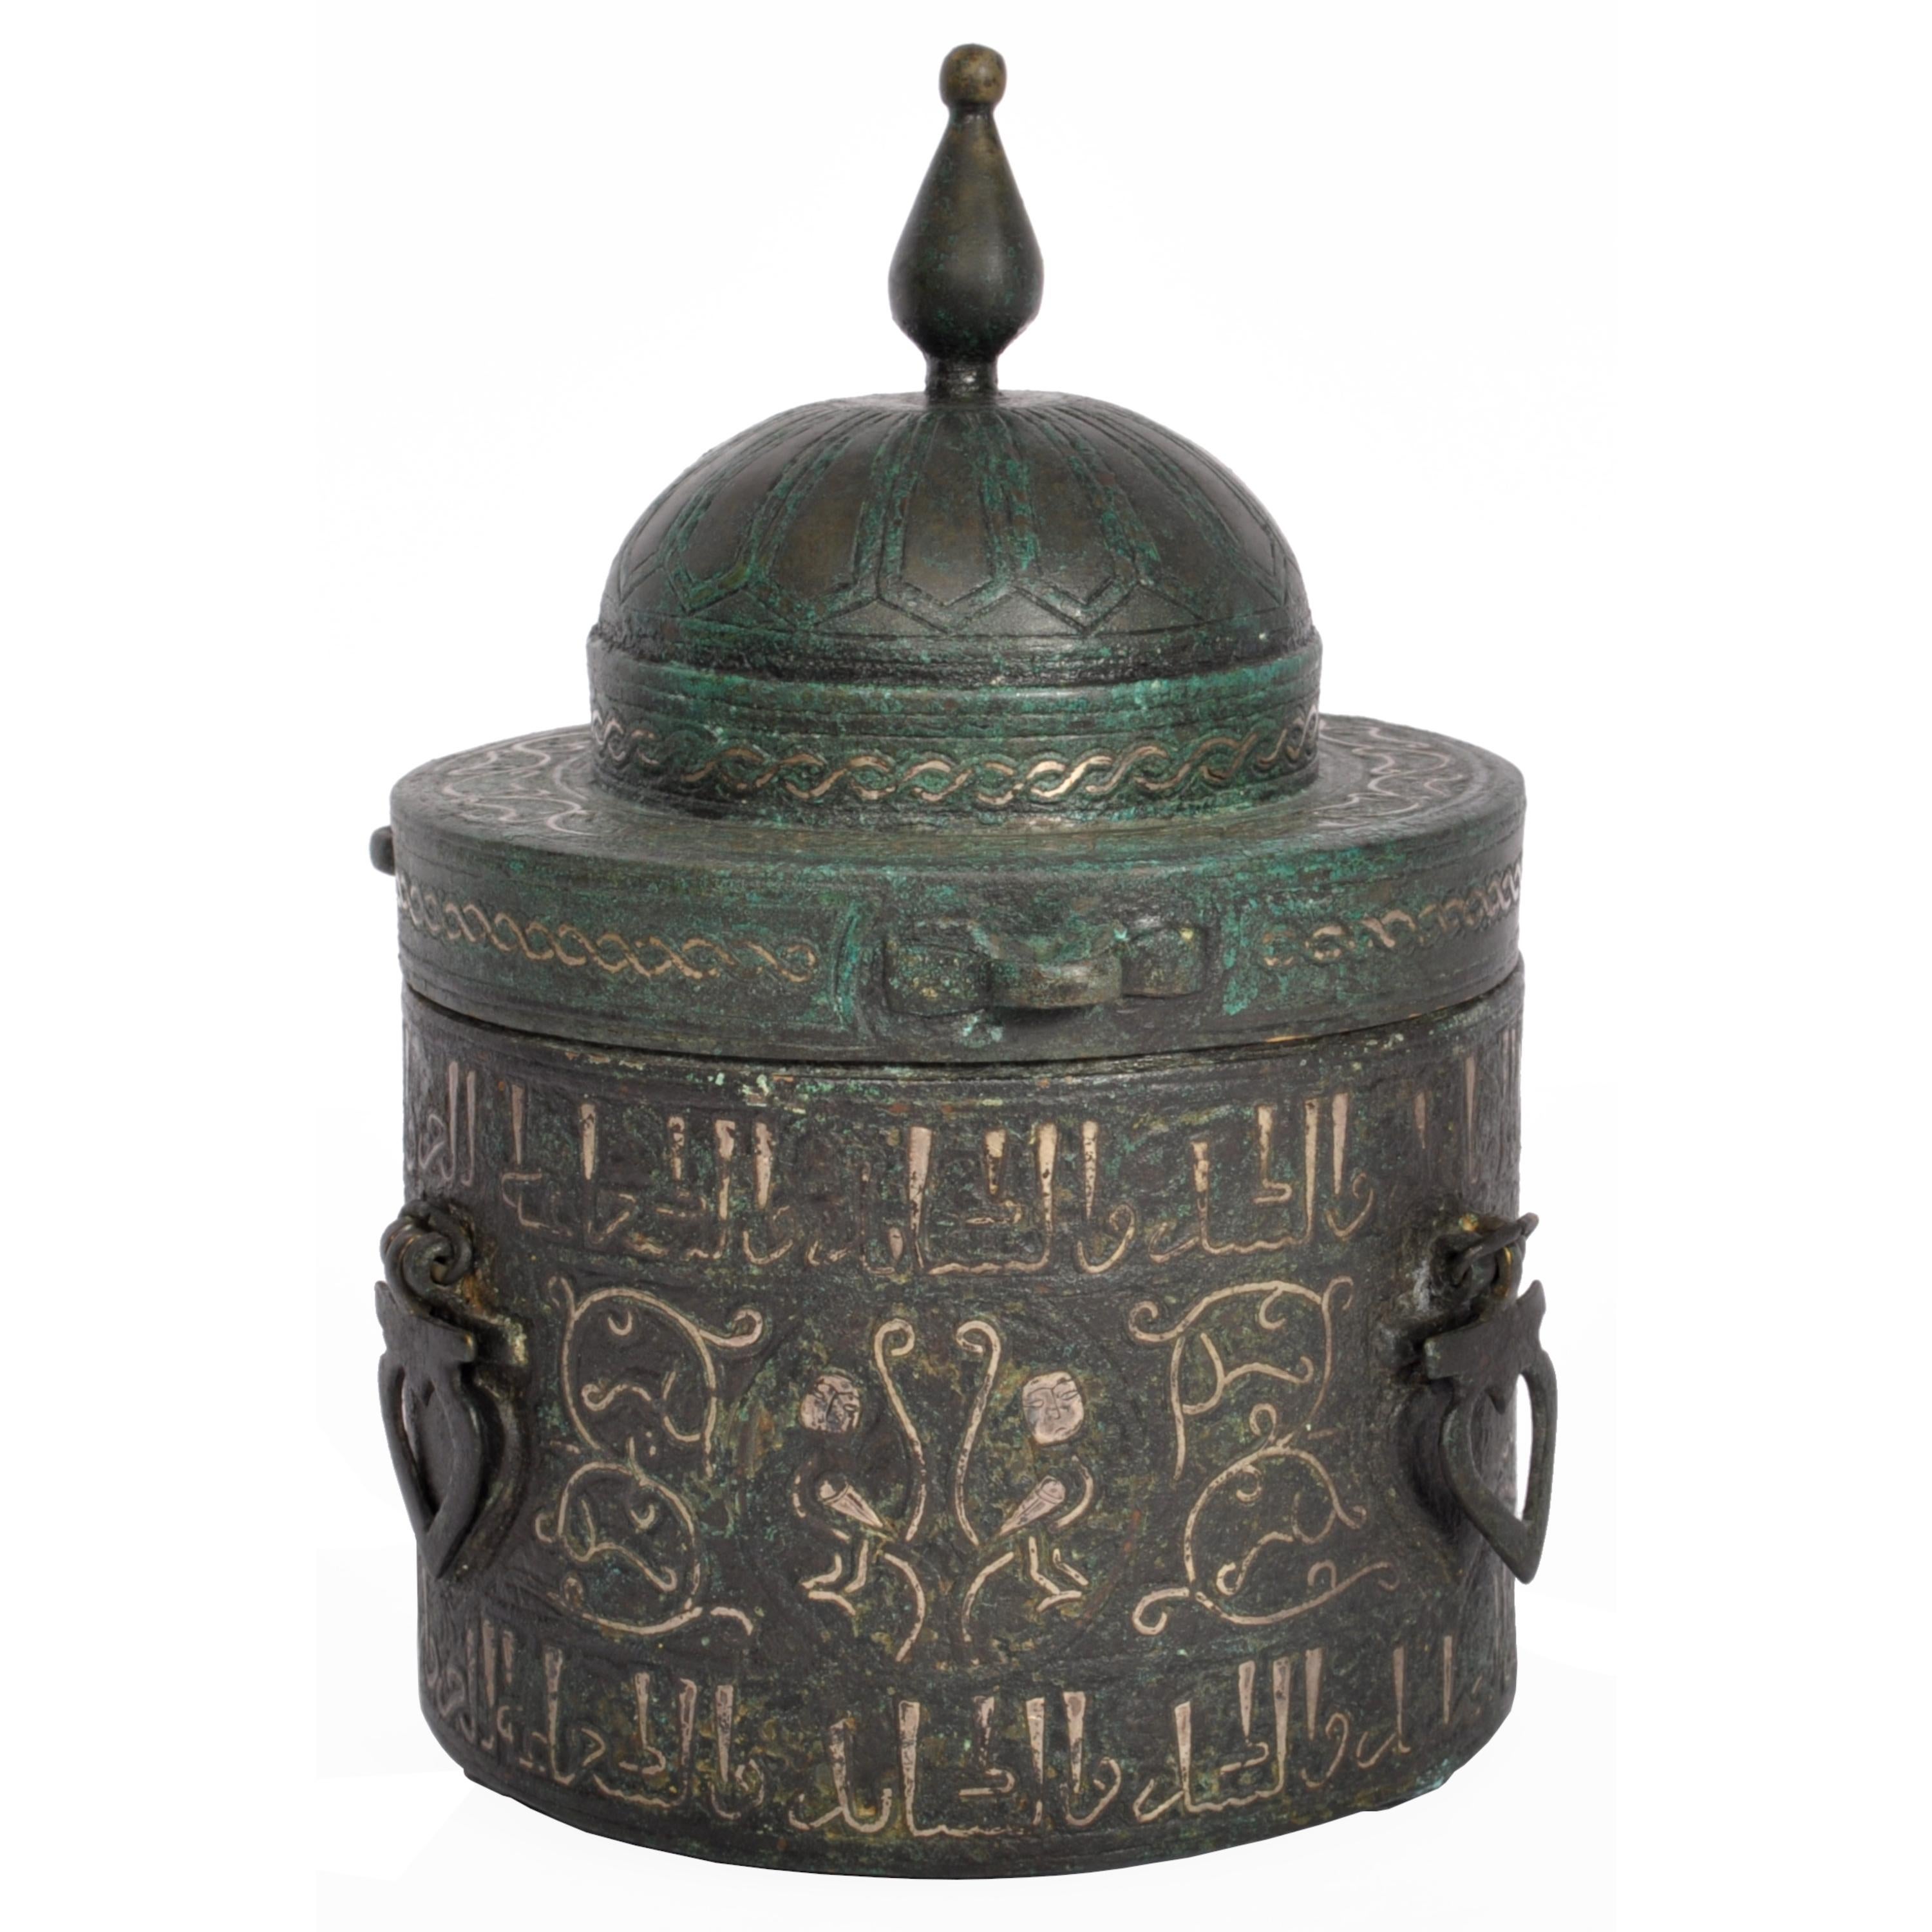 Bedeutendes islamisches Khurasan-Tintenfass mit Bronze- und Silbereinlage, Ostpersien, CIRCA 1200.
Das Tintenfass hat eine zylindrische Form und einen flachen, kuppelförmigen Deckel mit einem hohen, geknöpften Abschluss, der mit einem doppelten Band